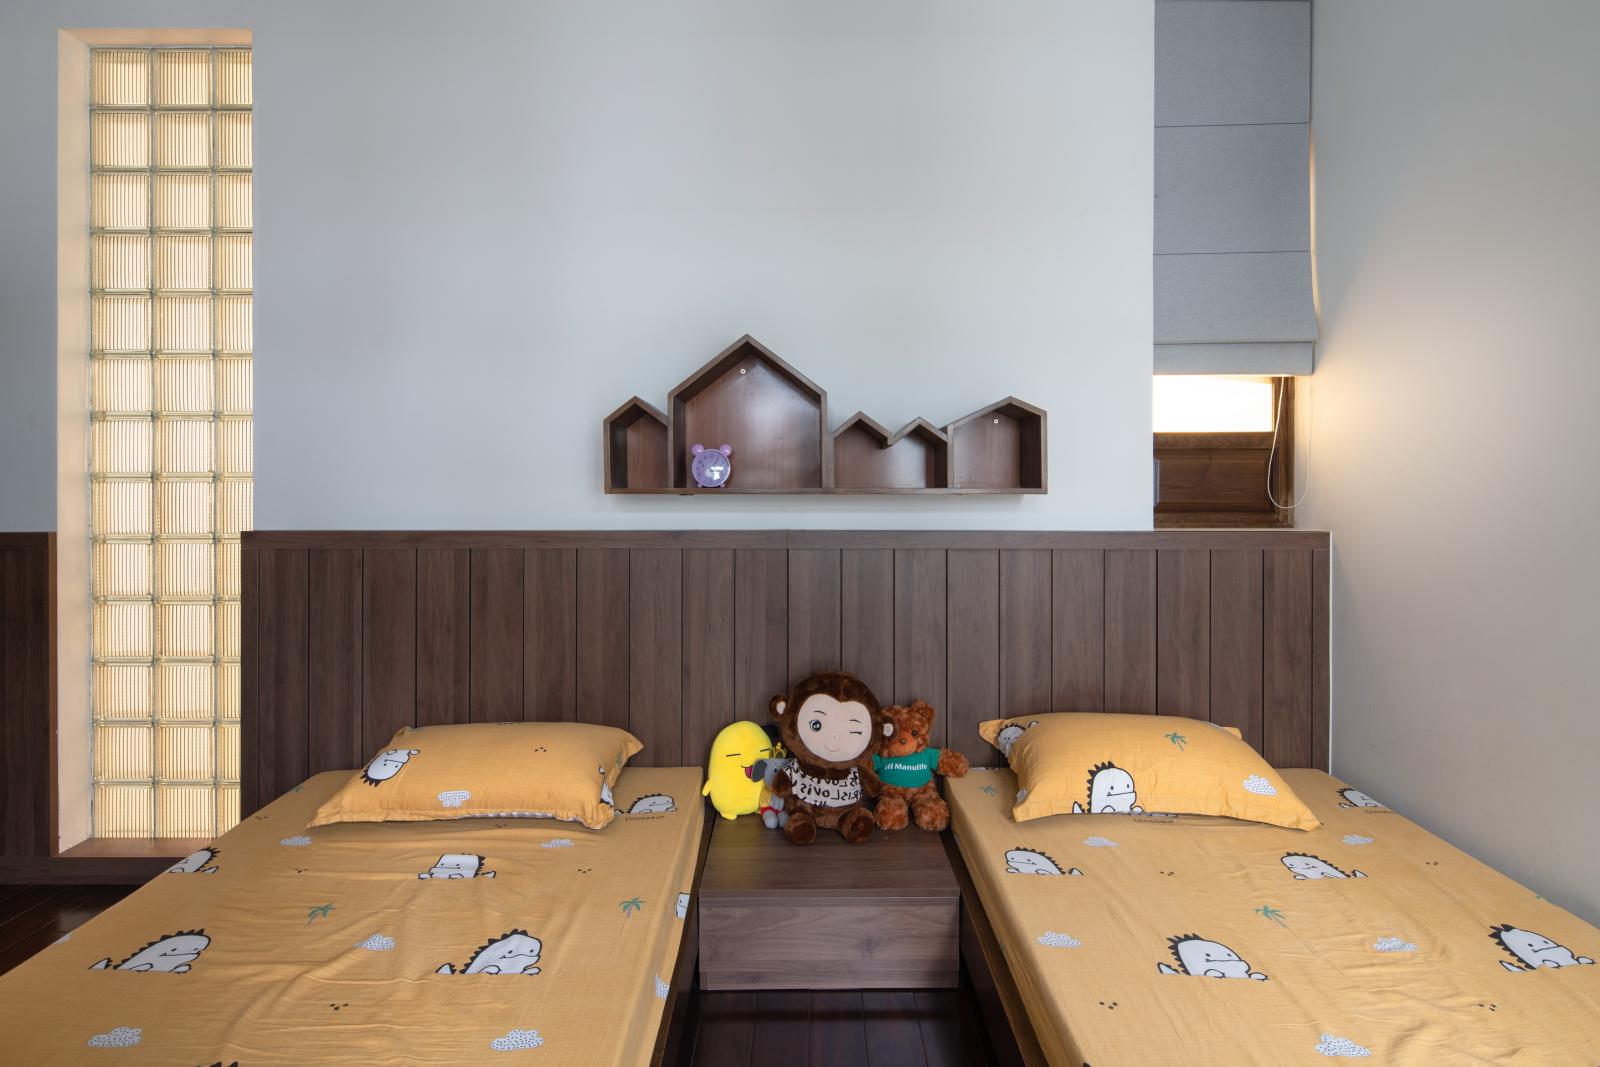 Hình ảnh phòng ngủ của các con được thiết kế đơn giản, chú trọng tính an toàn với giường đôi thấp gọn, mảng tường ốp gỗ sẫm màu.